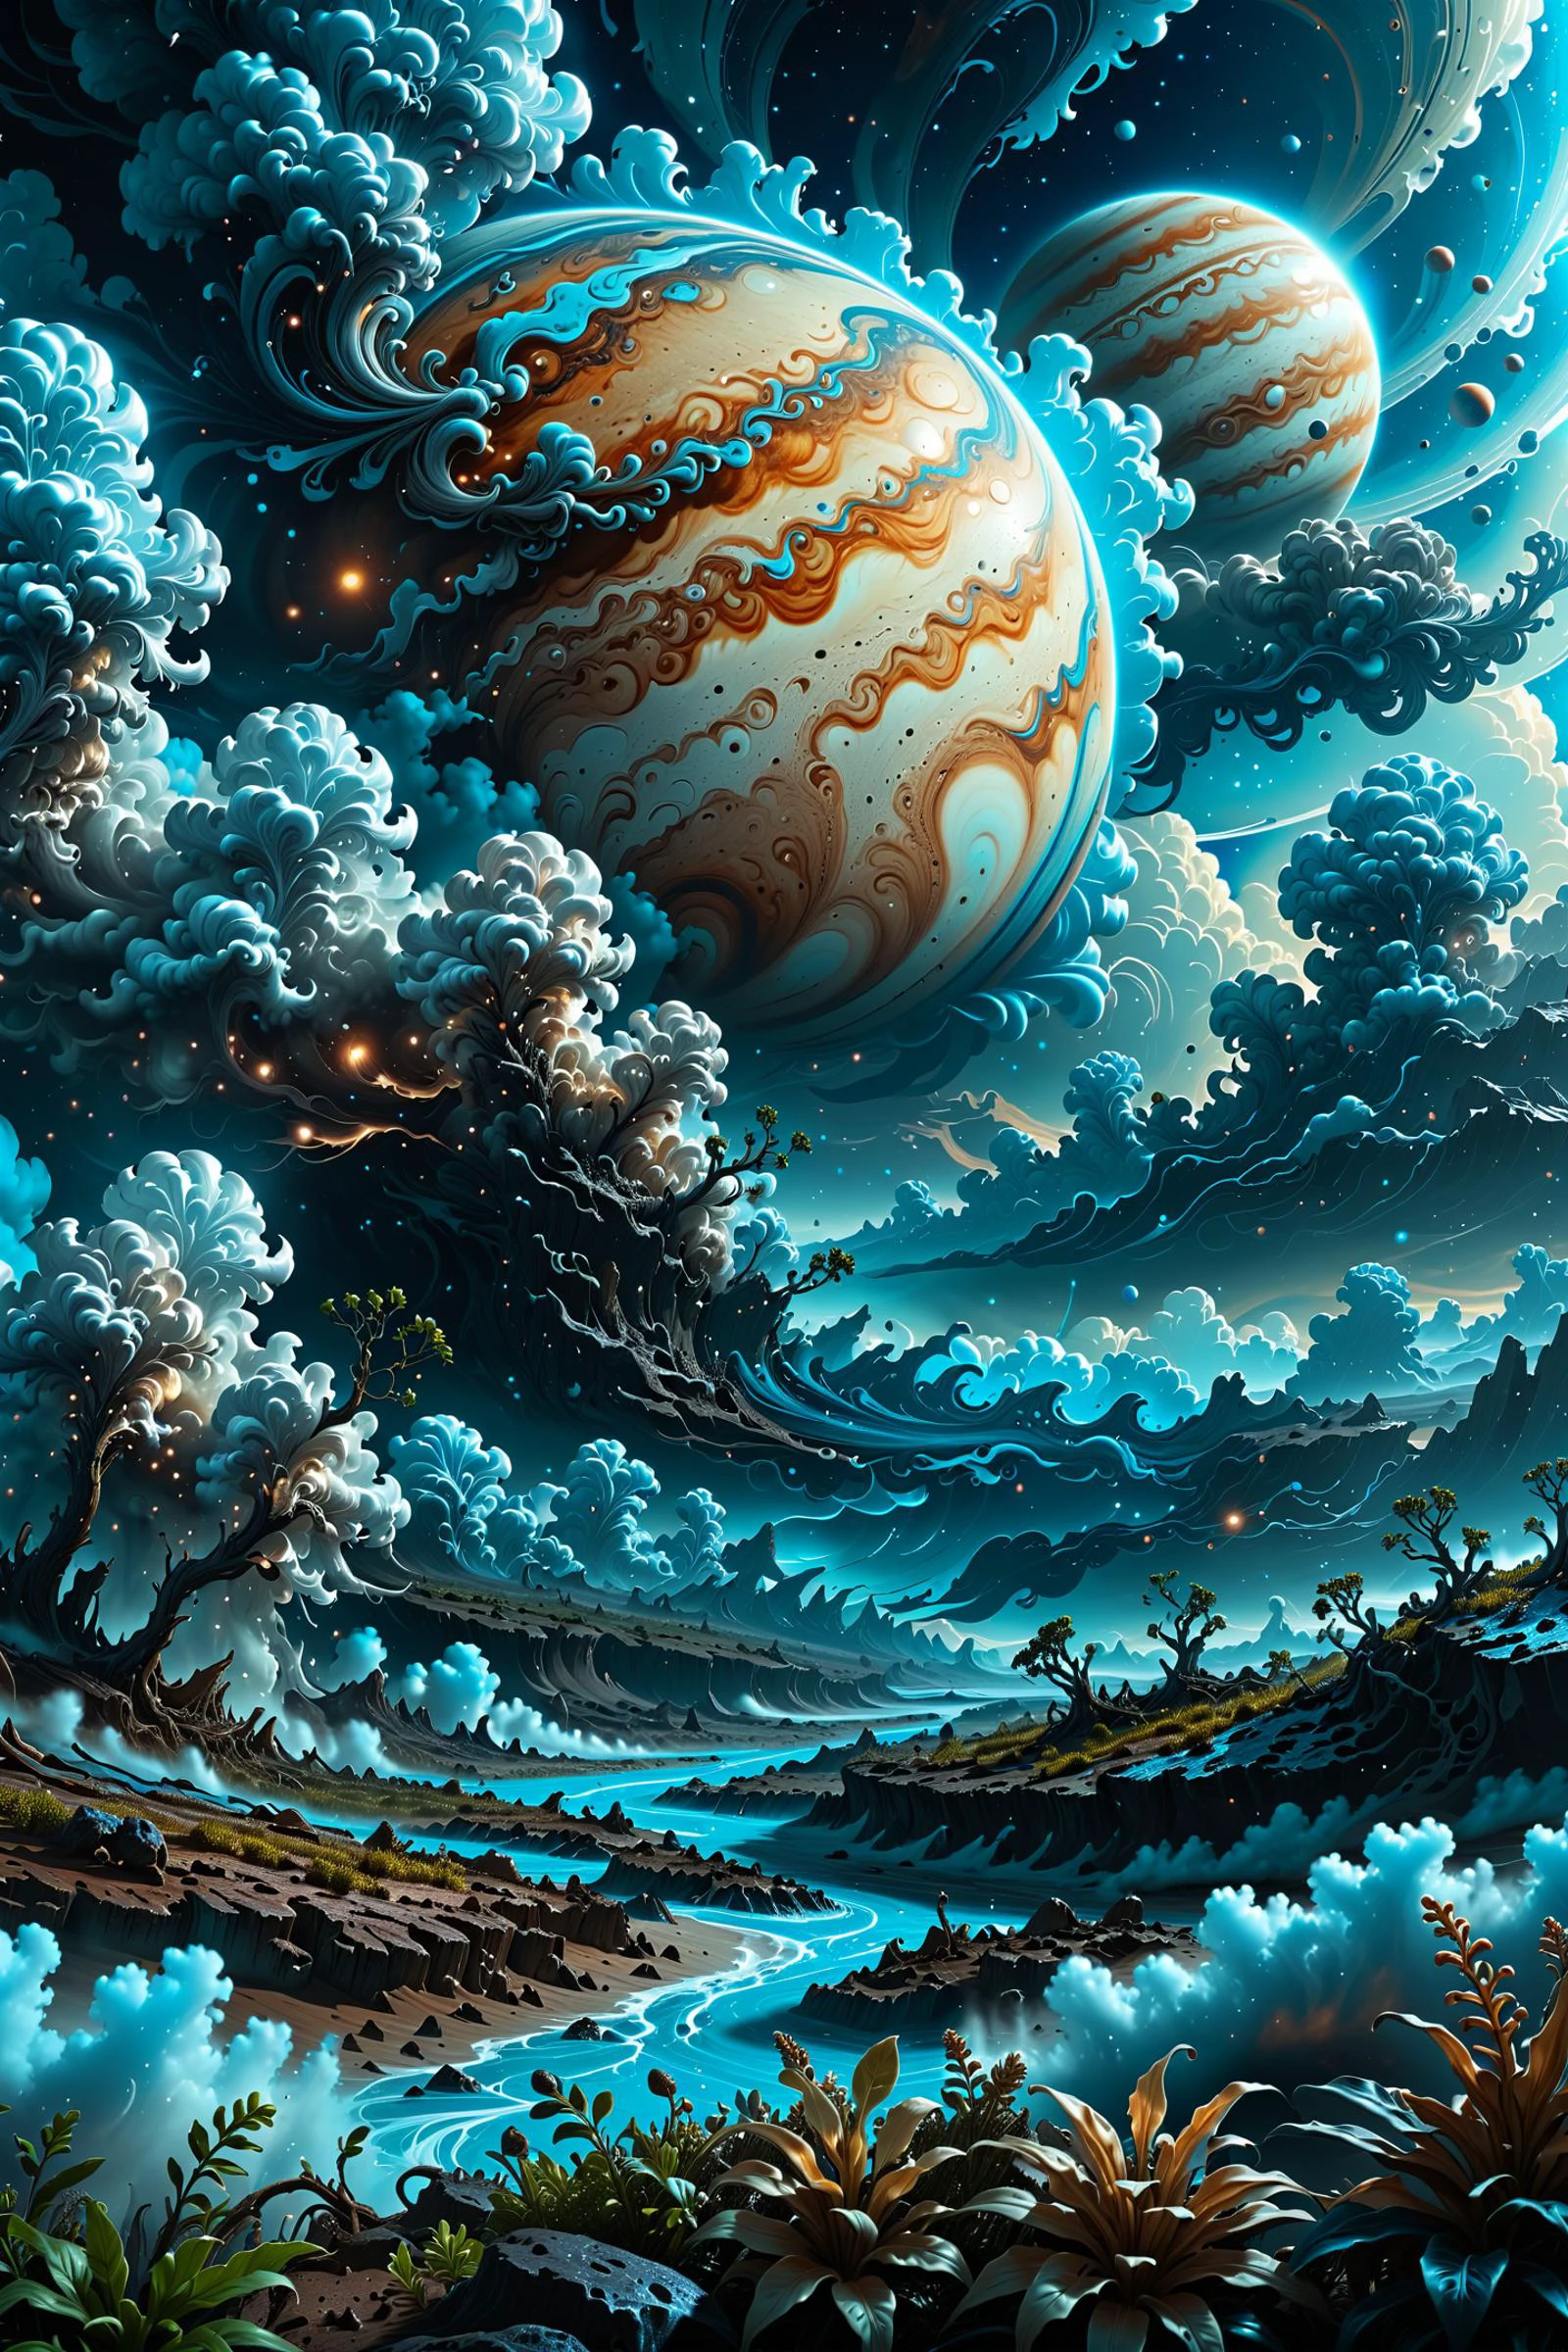 Иллюстрация облаков Юпитера Дэна Мамфорда, инопланетный пейзаж и растительность, эпическая сцена, много клубящихся облаков, высокая подверженность, очень подробный, реалистичный, яркие голубые оттенки, uhd
photo photoреалистичный photography photograph photographic реалистичный hyperреалистичный